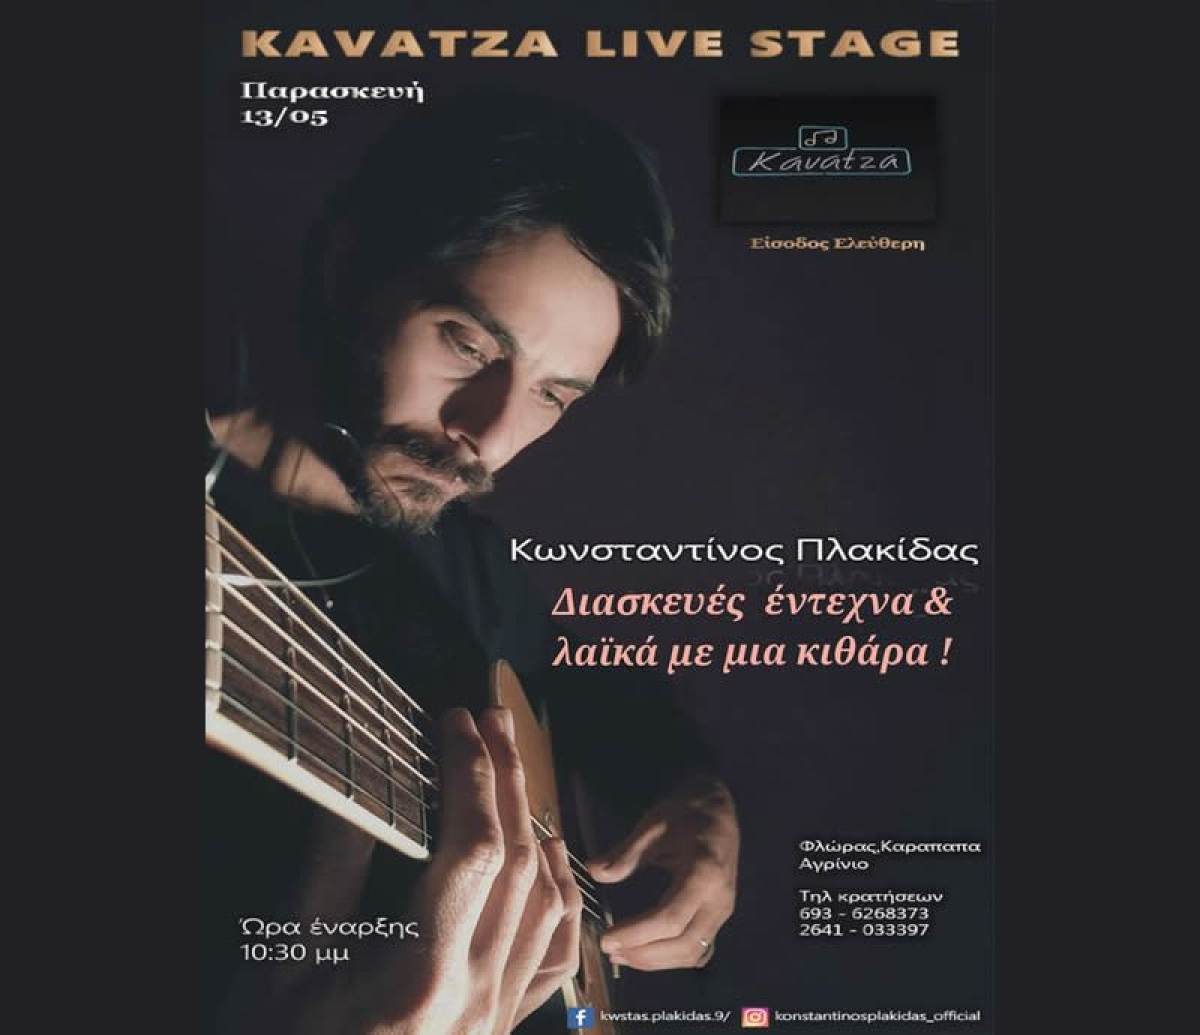 Αγρίνιο: Ο Κωνσταντίνος Πλακίδας κάνει διασκευές σε έντεχνα &amp; λαϊκά με μια κιθάρα στο Kavatza Live Stage (Παρ 13/5/2022 22:30)